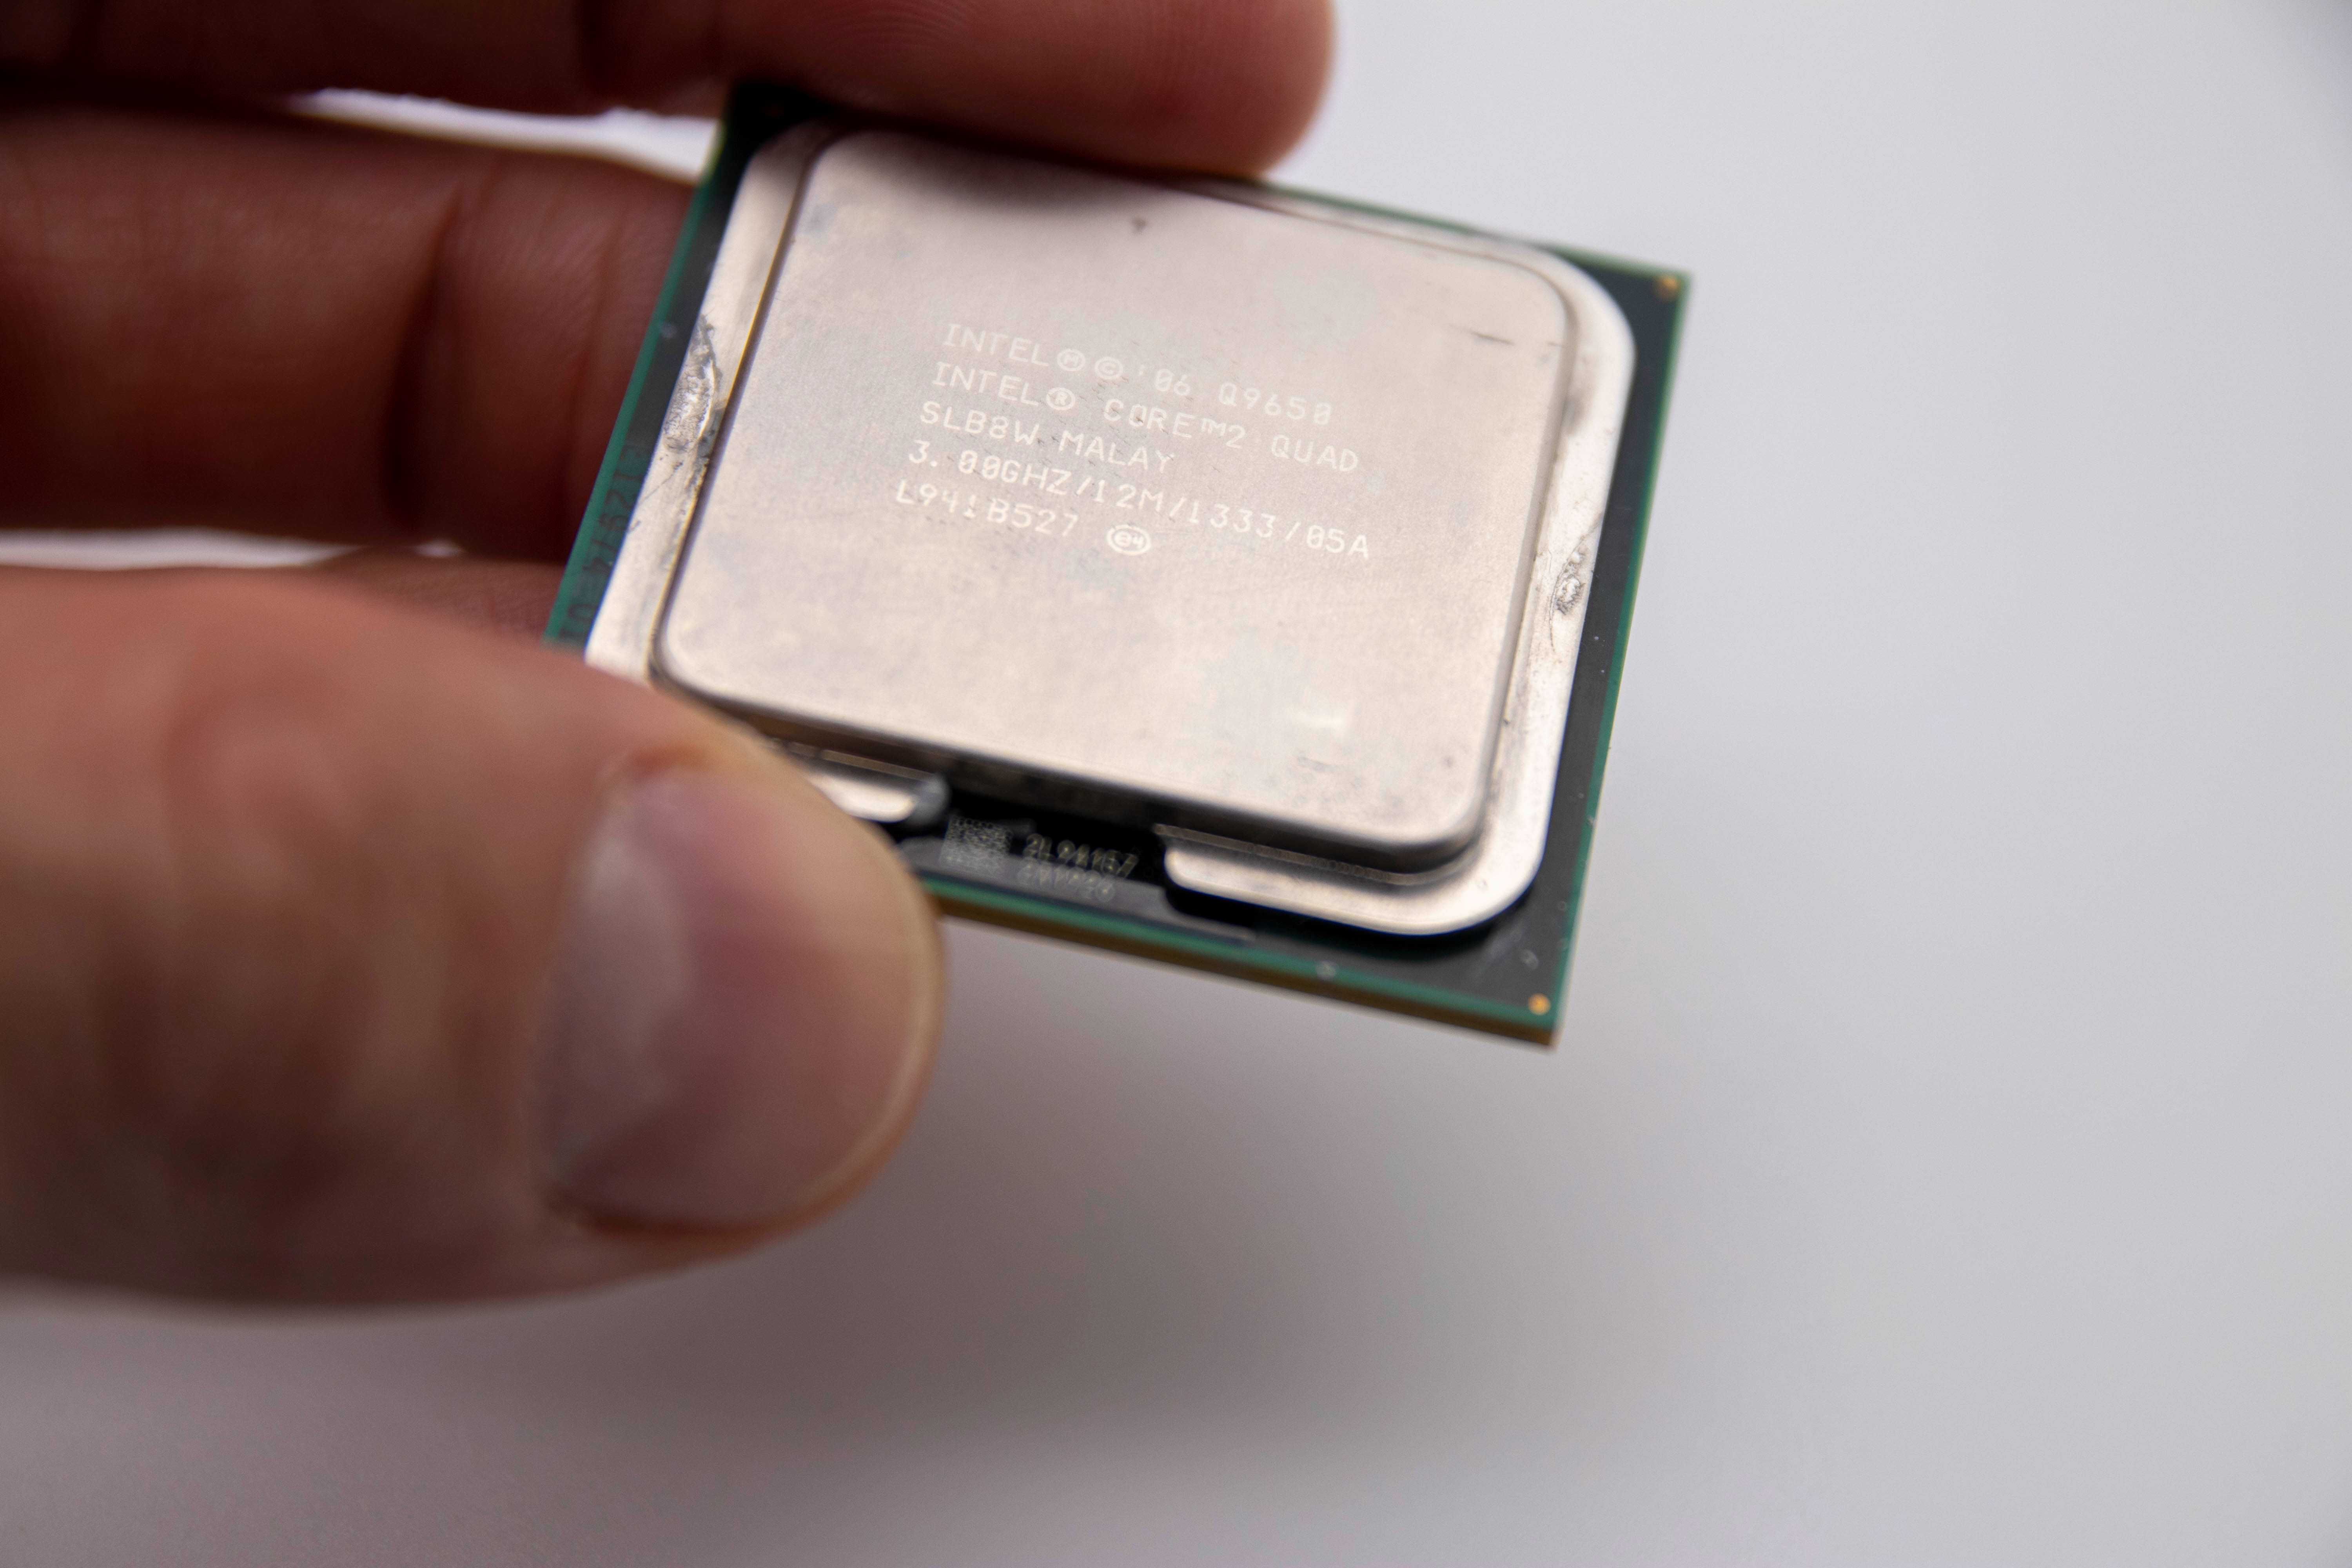 Motherboard Acer C/ Intel Quad 2 Quad Q9650 8gb Ram